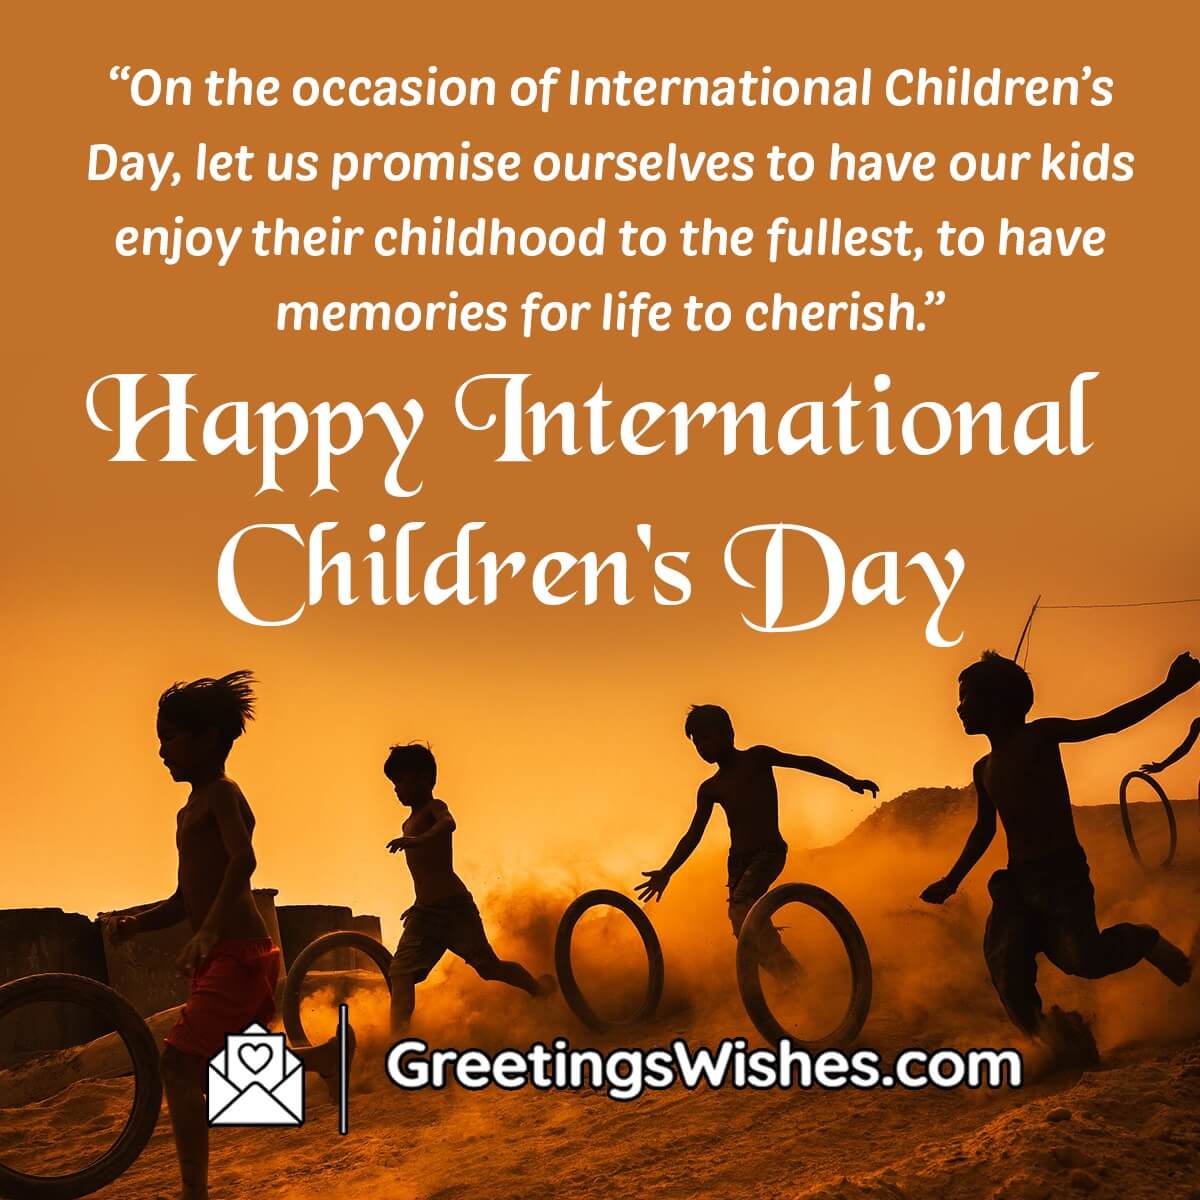 Happy International Children’s Day Messages